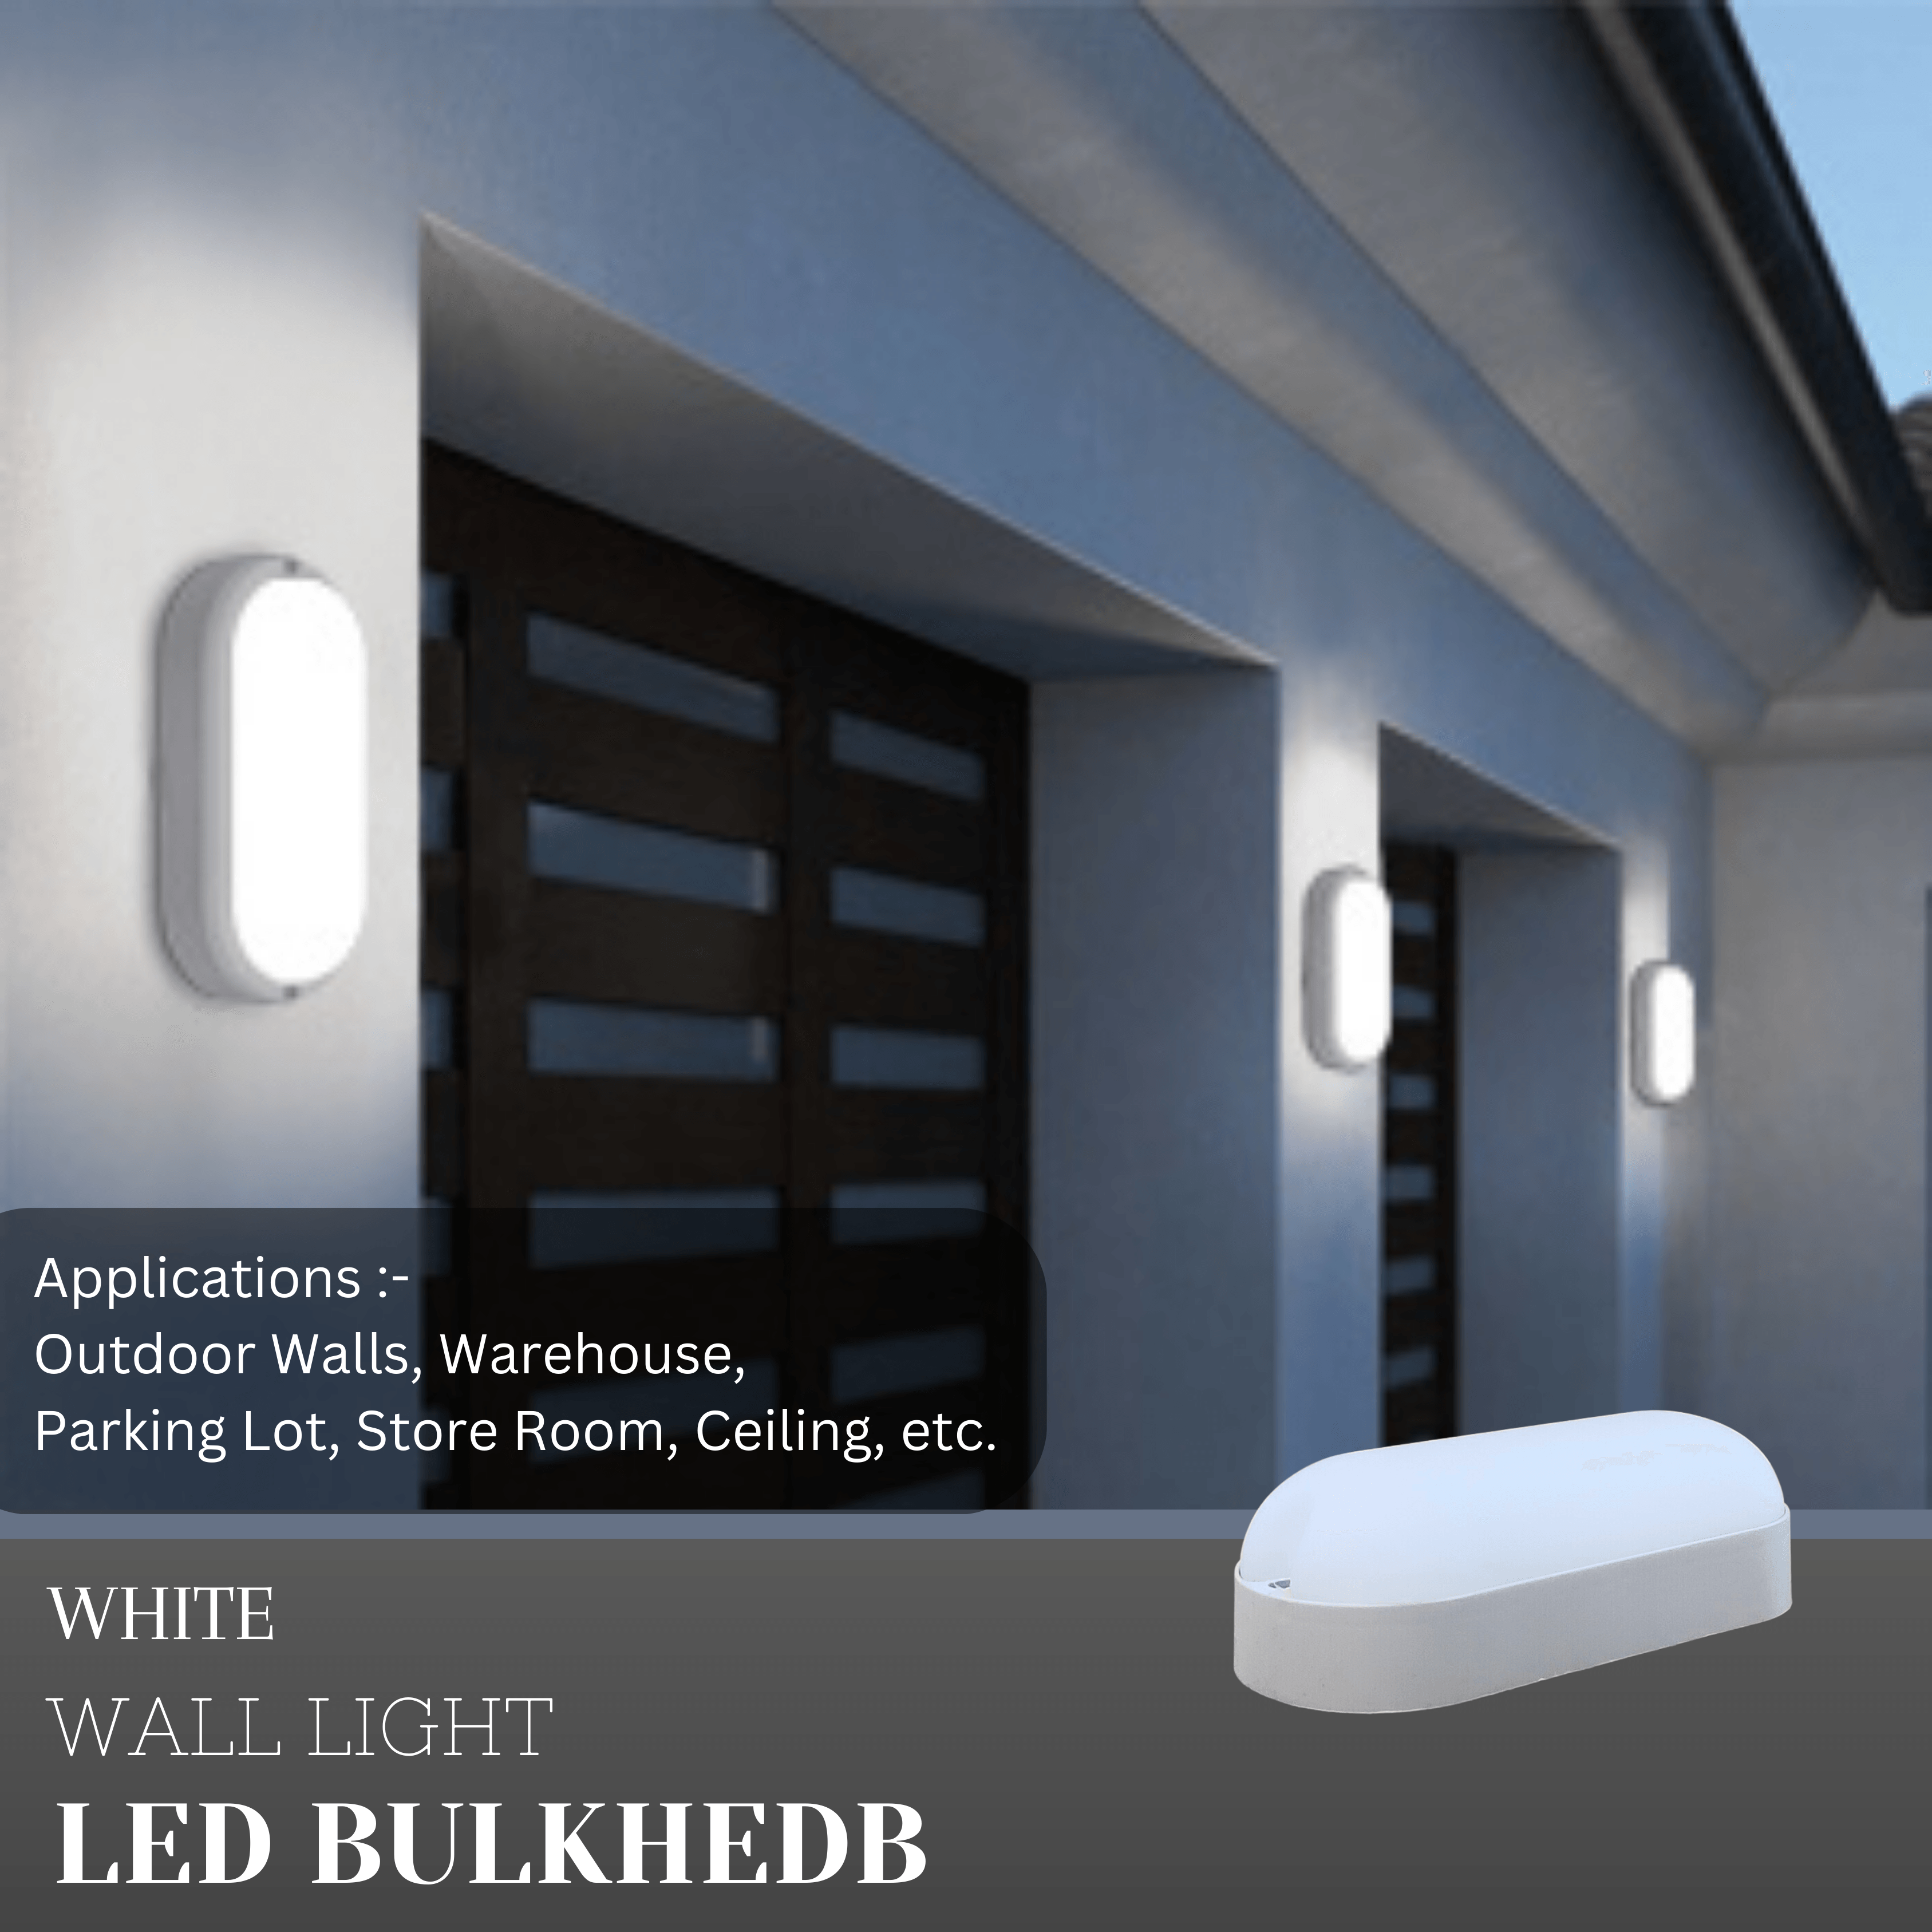 9 Watt LED Oval Shape Outdoor Bulkhead Waterproof Light for Outdoor Purposes